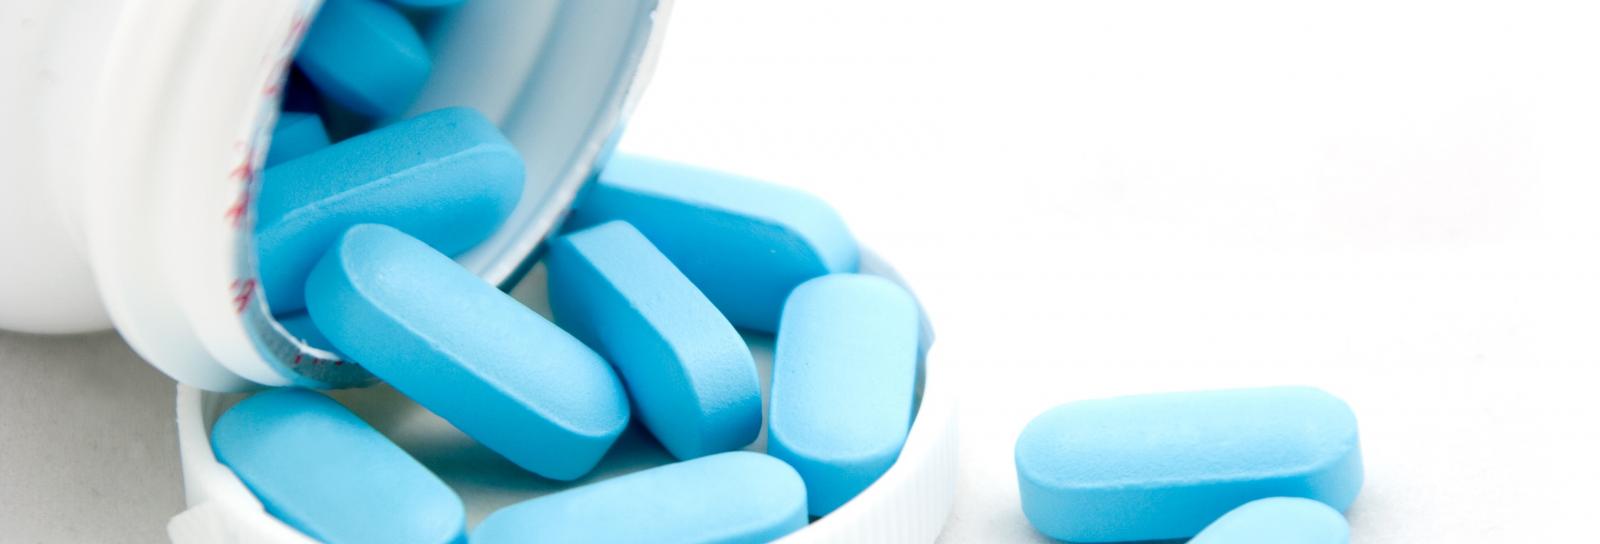 pill bottle with blue pills